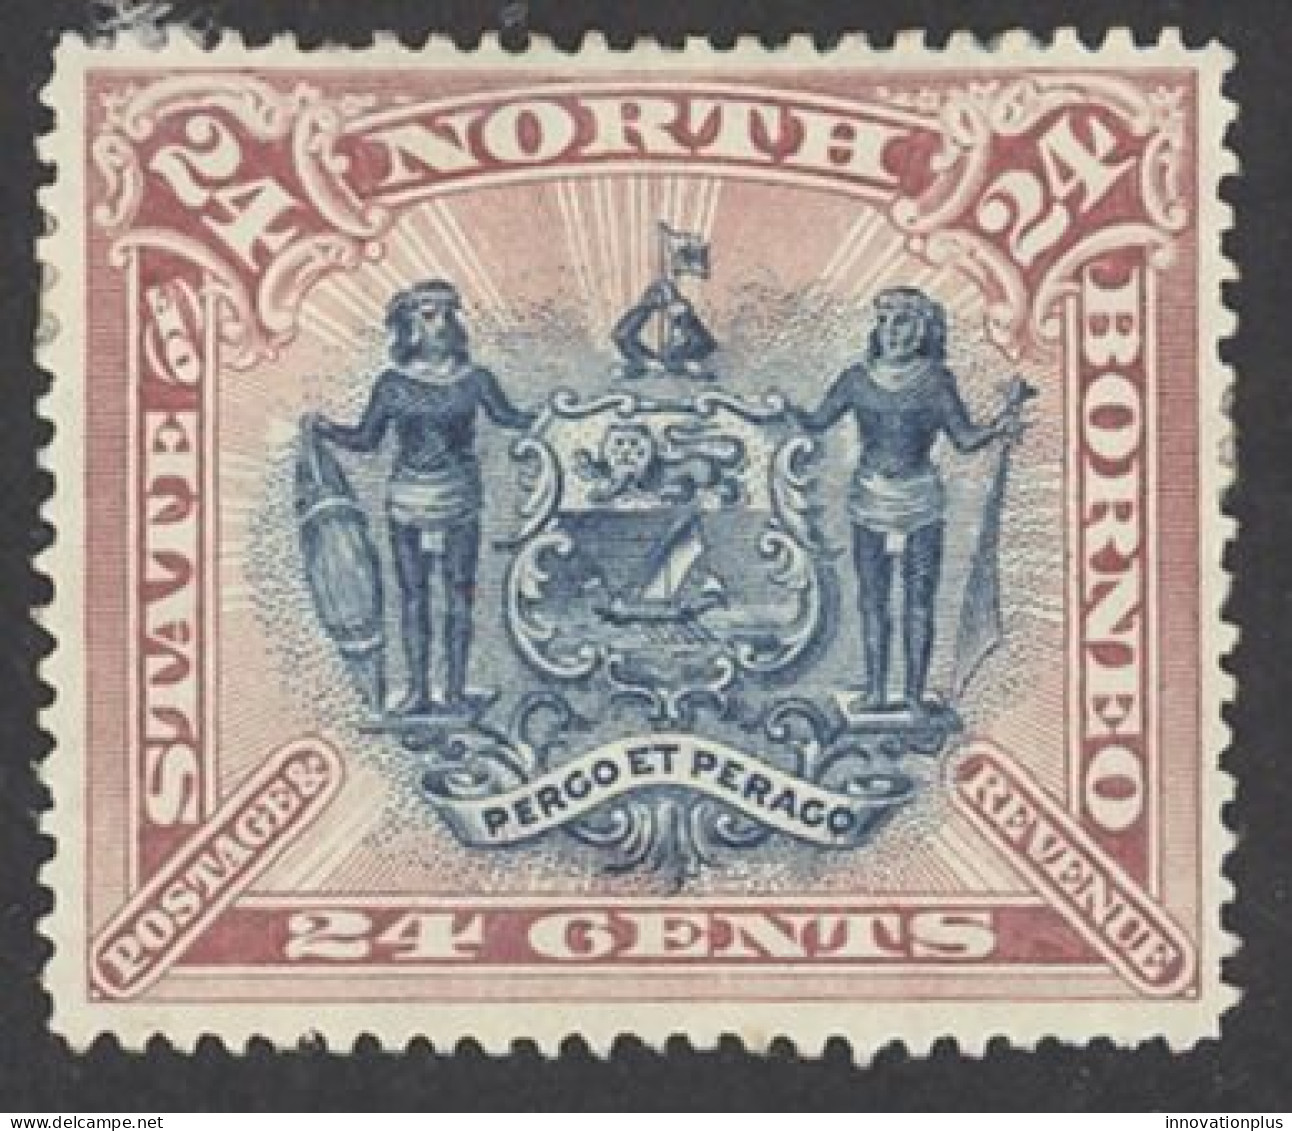 North Borneo Sc# 67 MH 1894 24c Coat Of Arms - Bornéo Du Nord (...-1963)